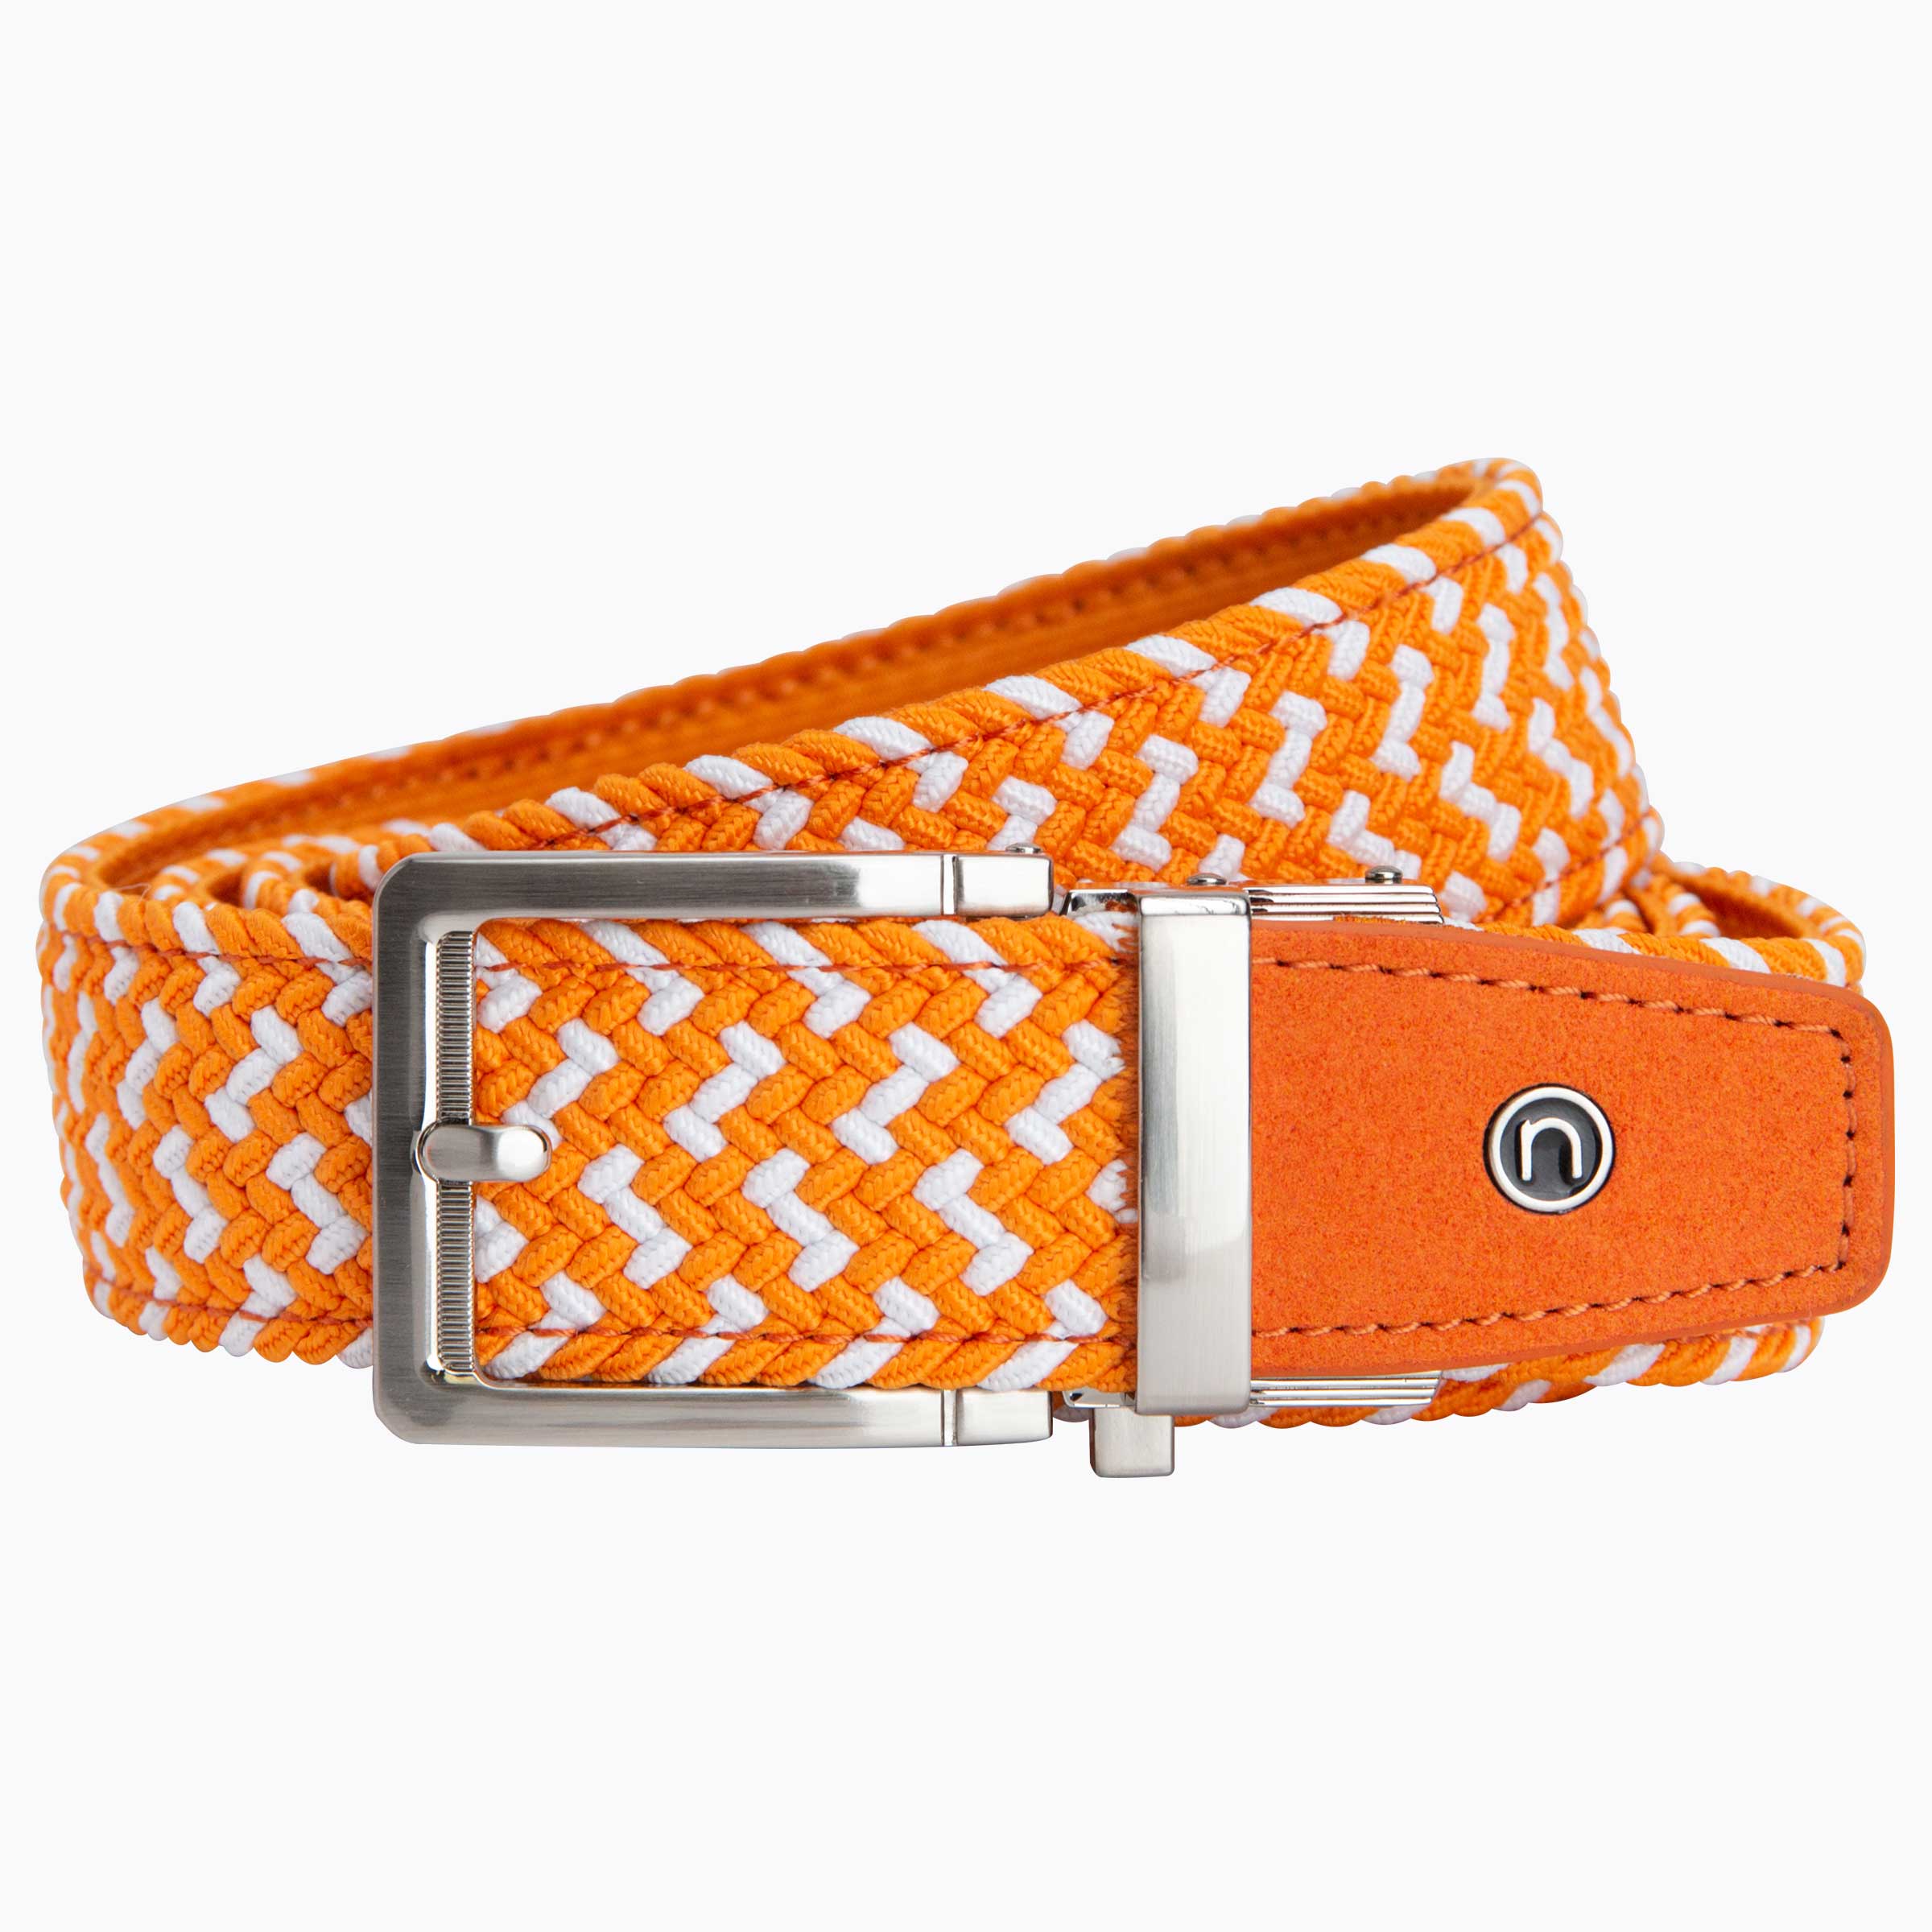 Braided Orange & White Golf Belt 1.38" [35mm]